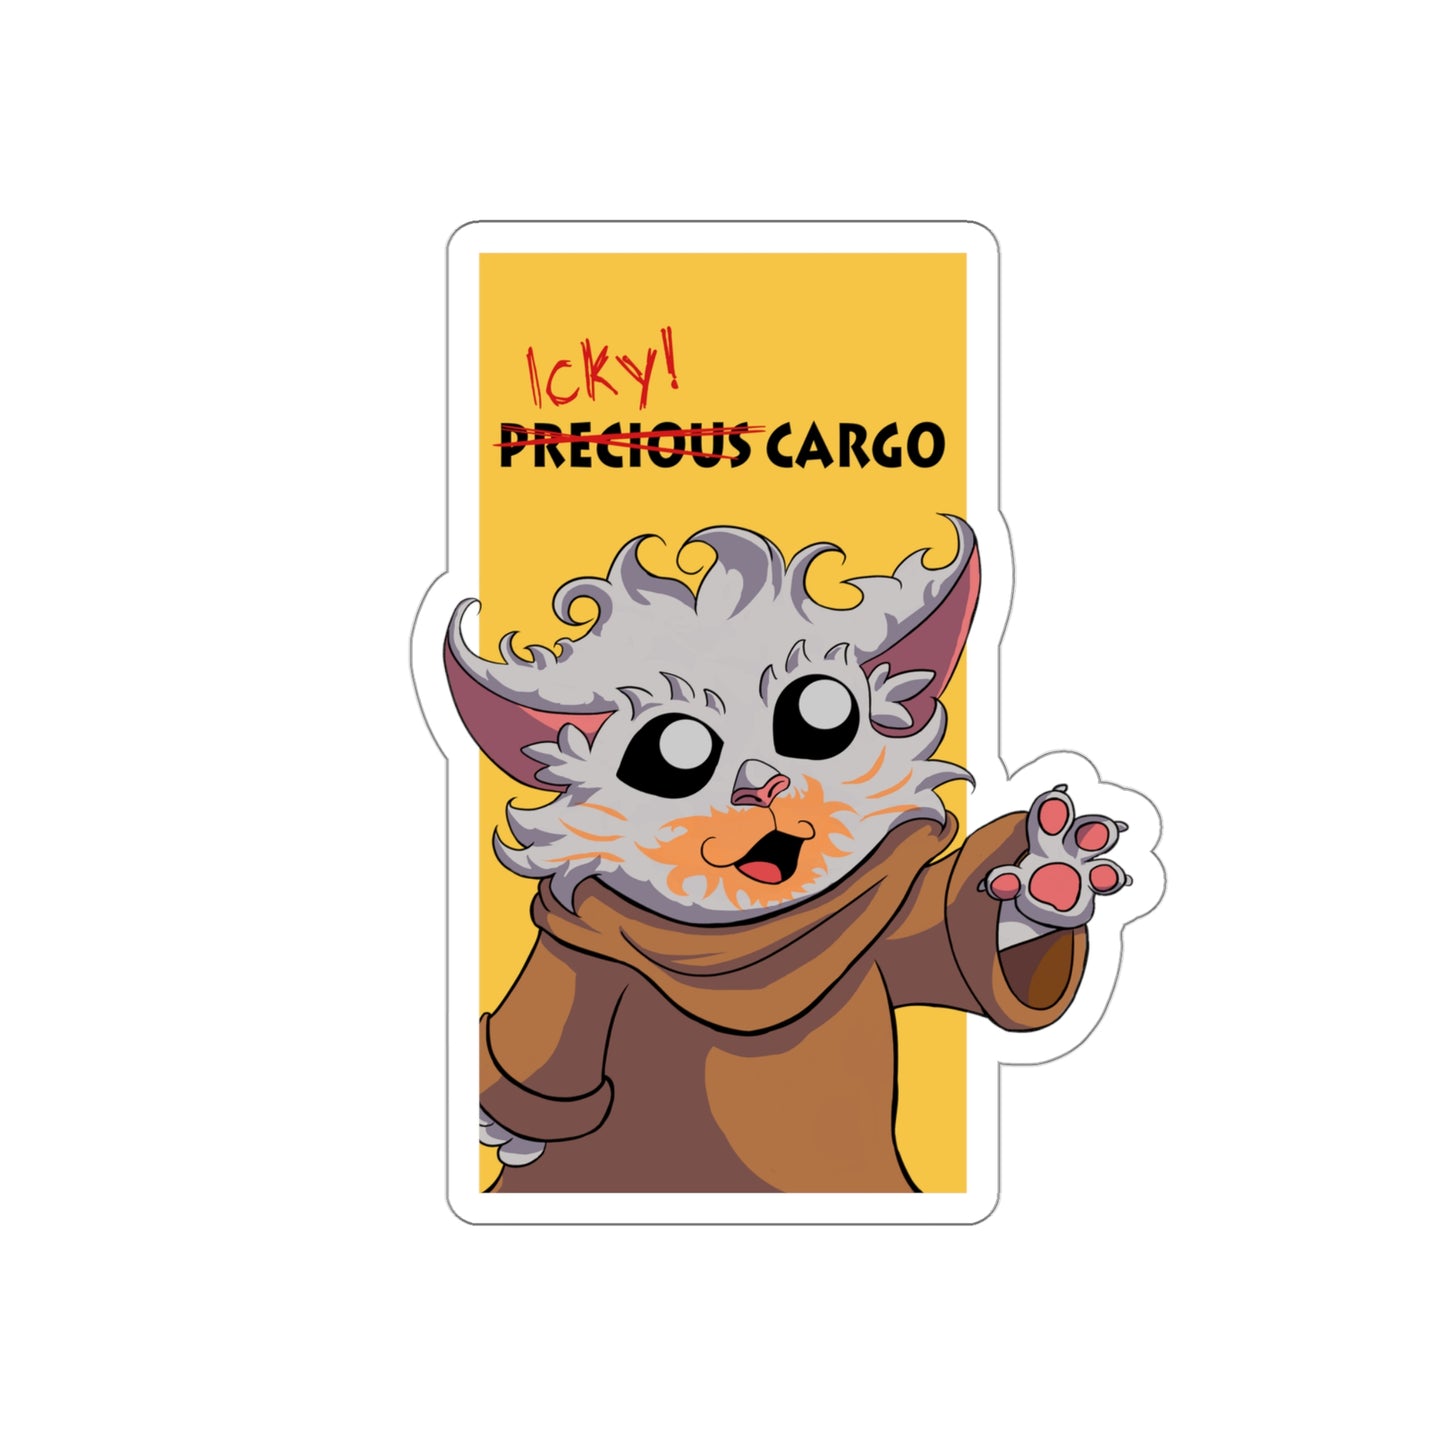 Icky Cargo Die-Cut Sticker - Wisp Campaign